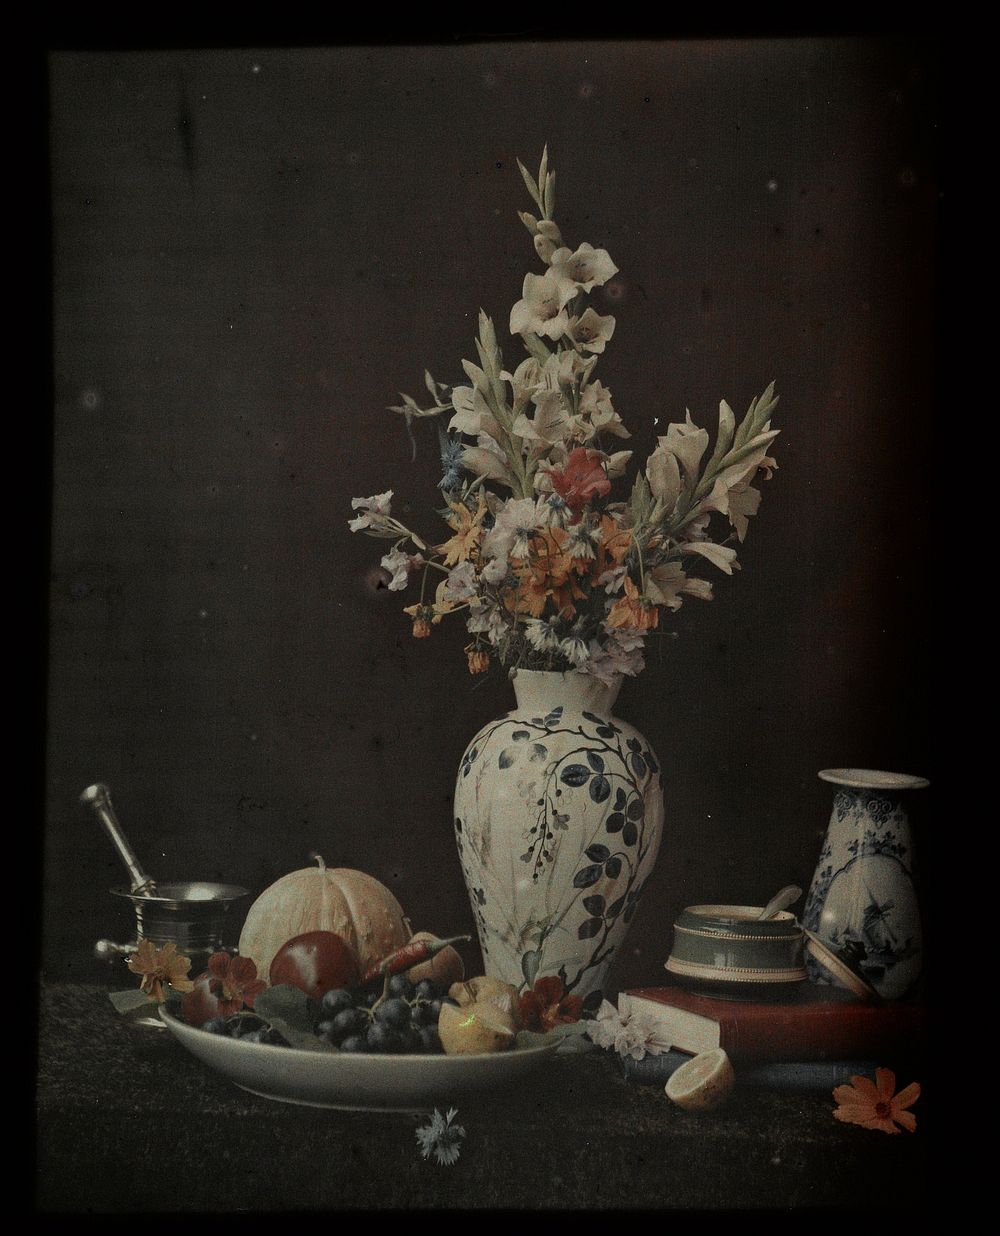 Stilleven met bloemen, fruit en vazen (1907 - 1930) by anonymous